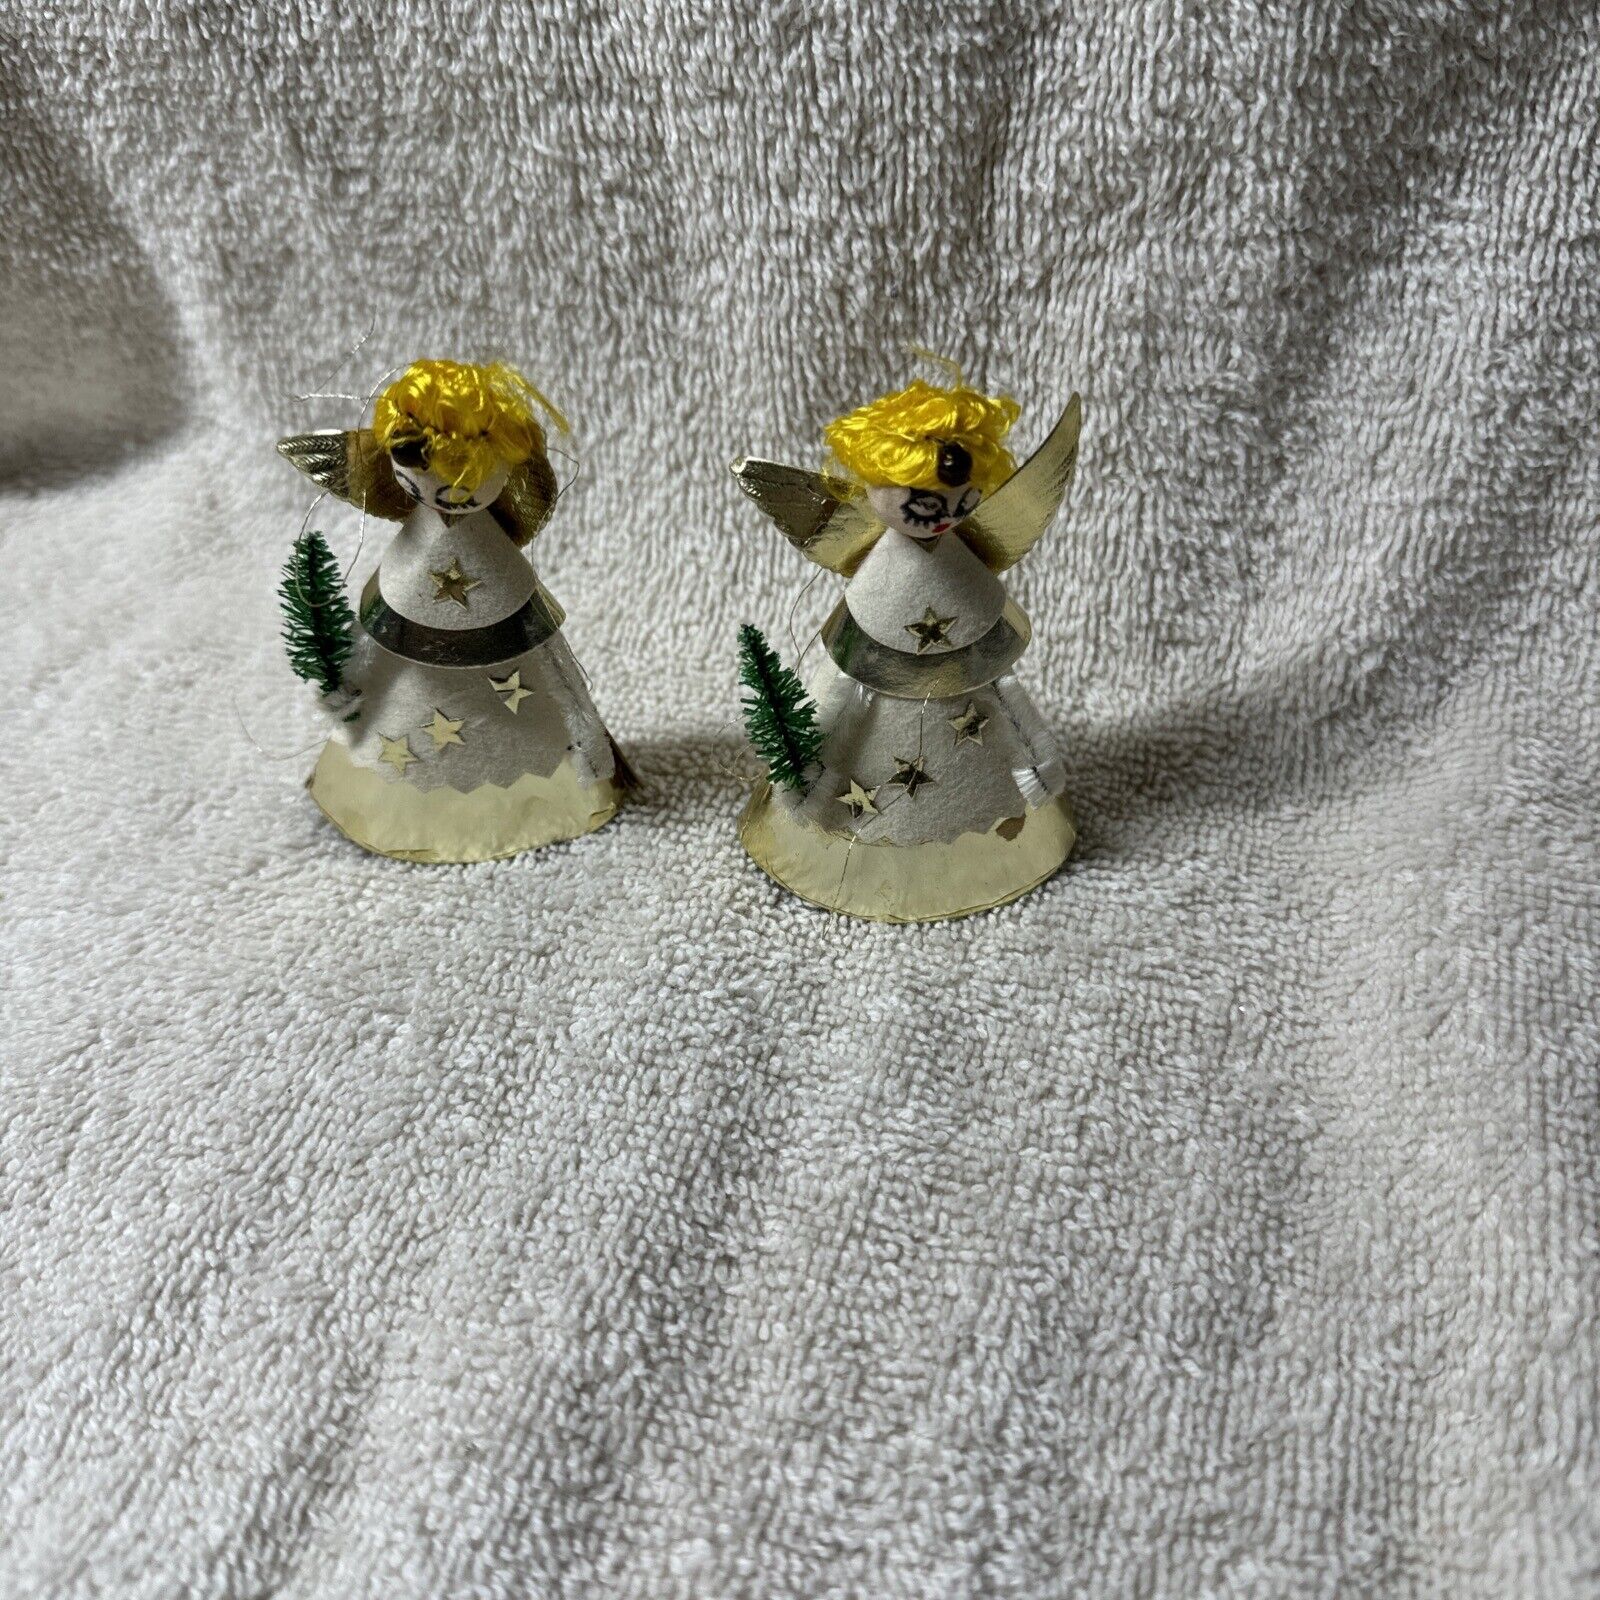 Vintage Spun Cotton/Foil Angel Christmas Ornaments Lot 2 Japan D72